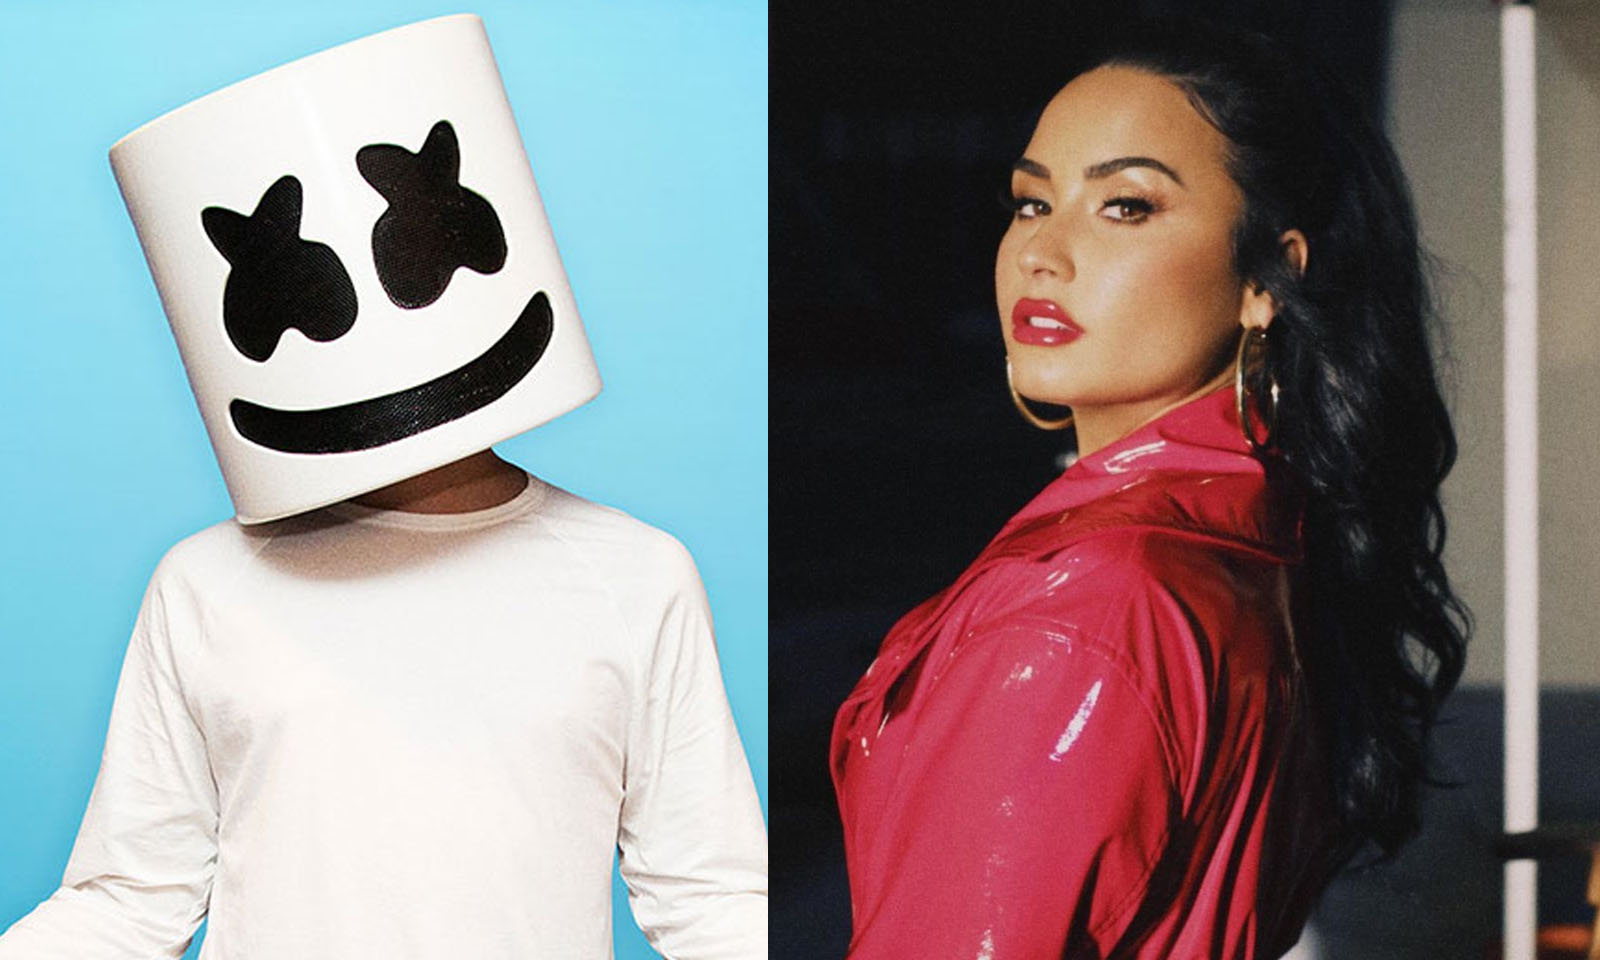 Novo single do Marshmello pode ser em parceria com Demi Lovato